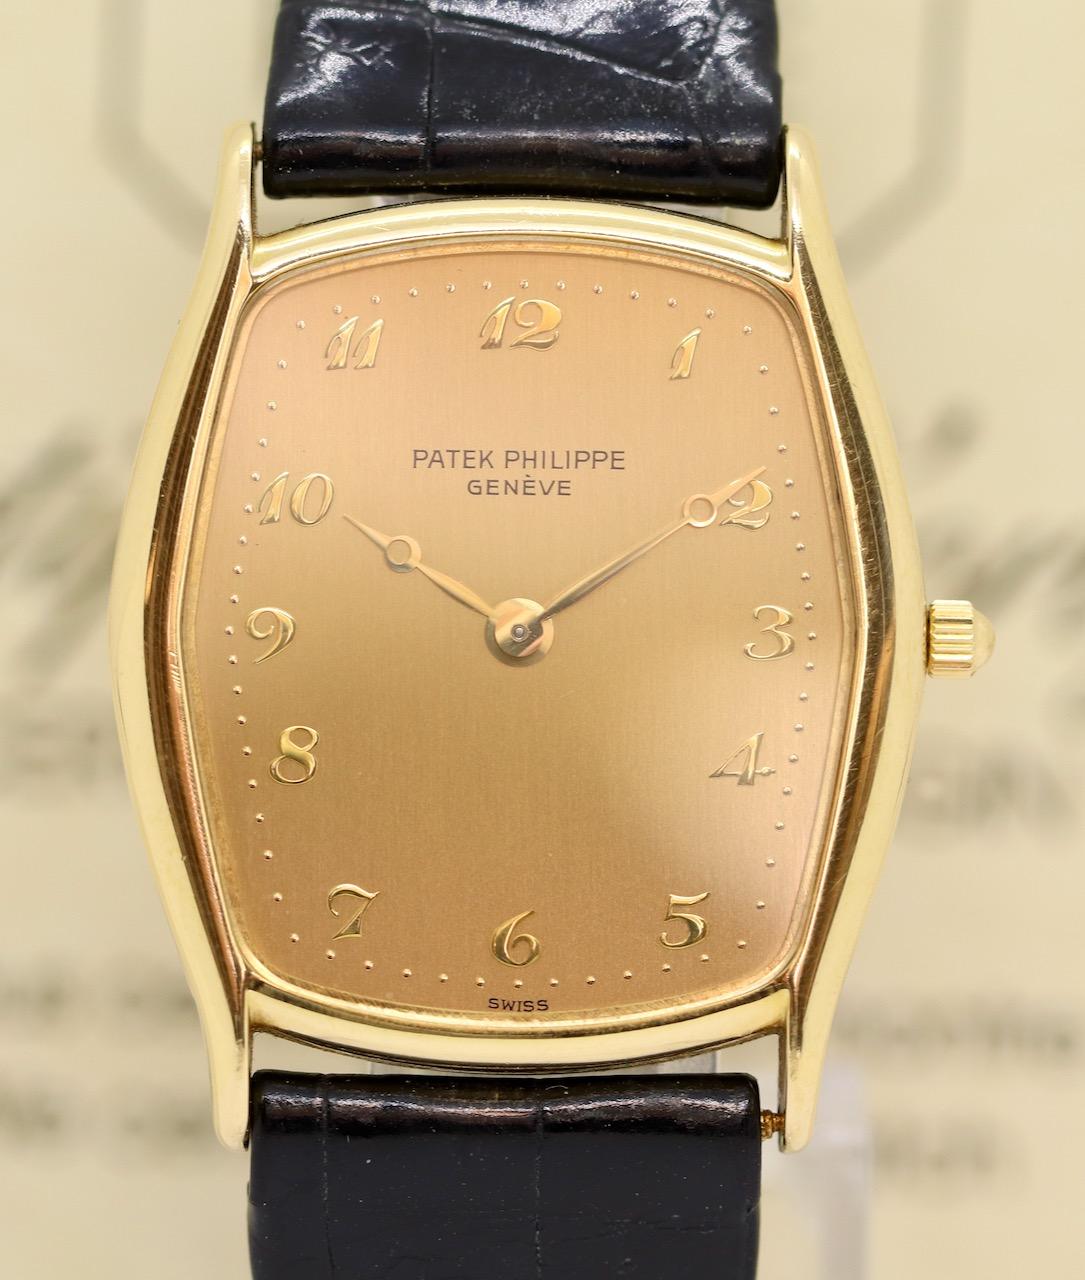 Cette montre Patek Philippe est un exemple parfait du luxe et de la précision que l'on est en droit d'attendre de l'un des plus grands fabricants de montres au monde. Véritable chef-d'œuvre d'horlogerie, la montre est réalisée en or 18 carats et